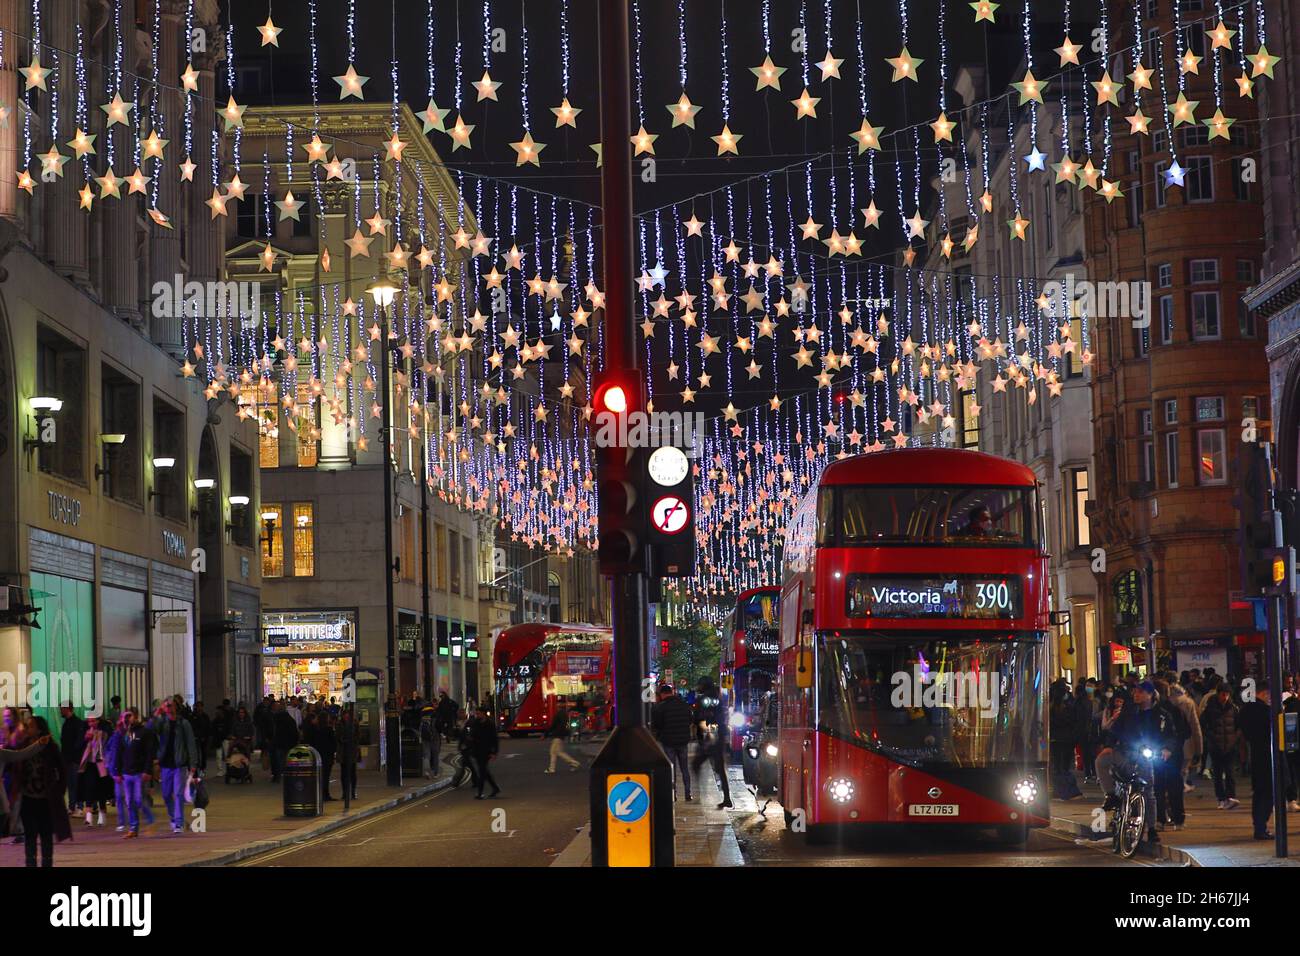 Londres, Royaume-Uni.13 novembre 2021.Décorations de Noël en forme d'étoile à Oxford Street à Londres, Angleterre crédit: Paul Brown/Alay Live News Banque D'Images